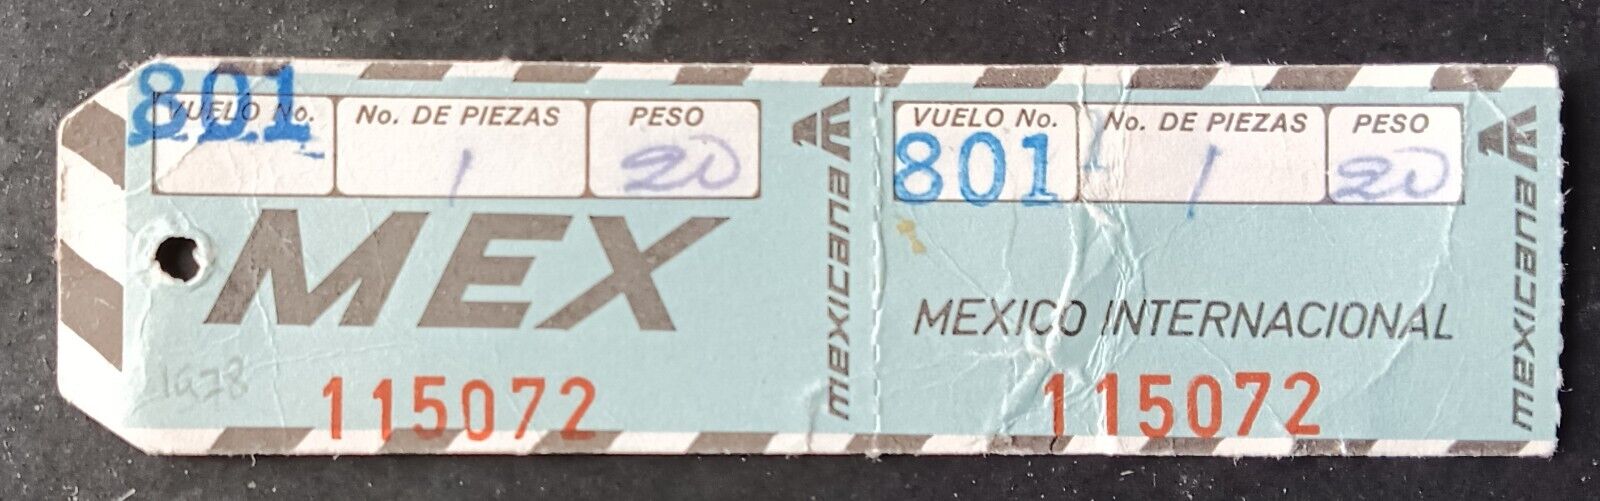 MEXICANA TO MEXICO 1978 - VINTAGE BAGGAGE TAG